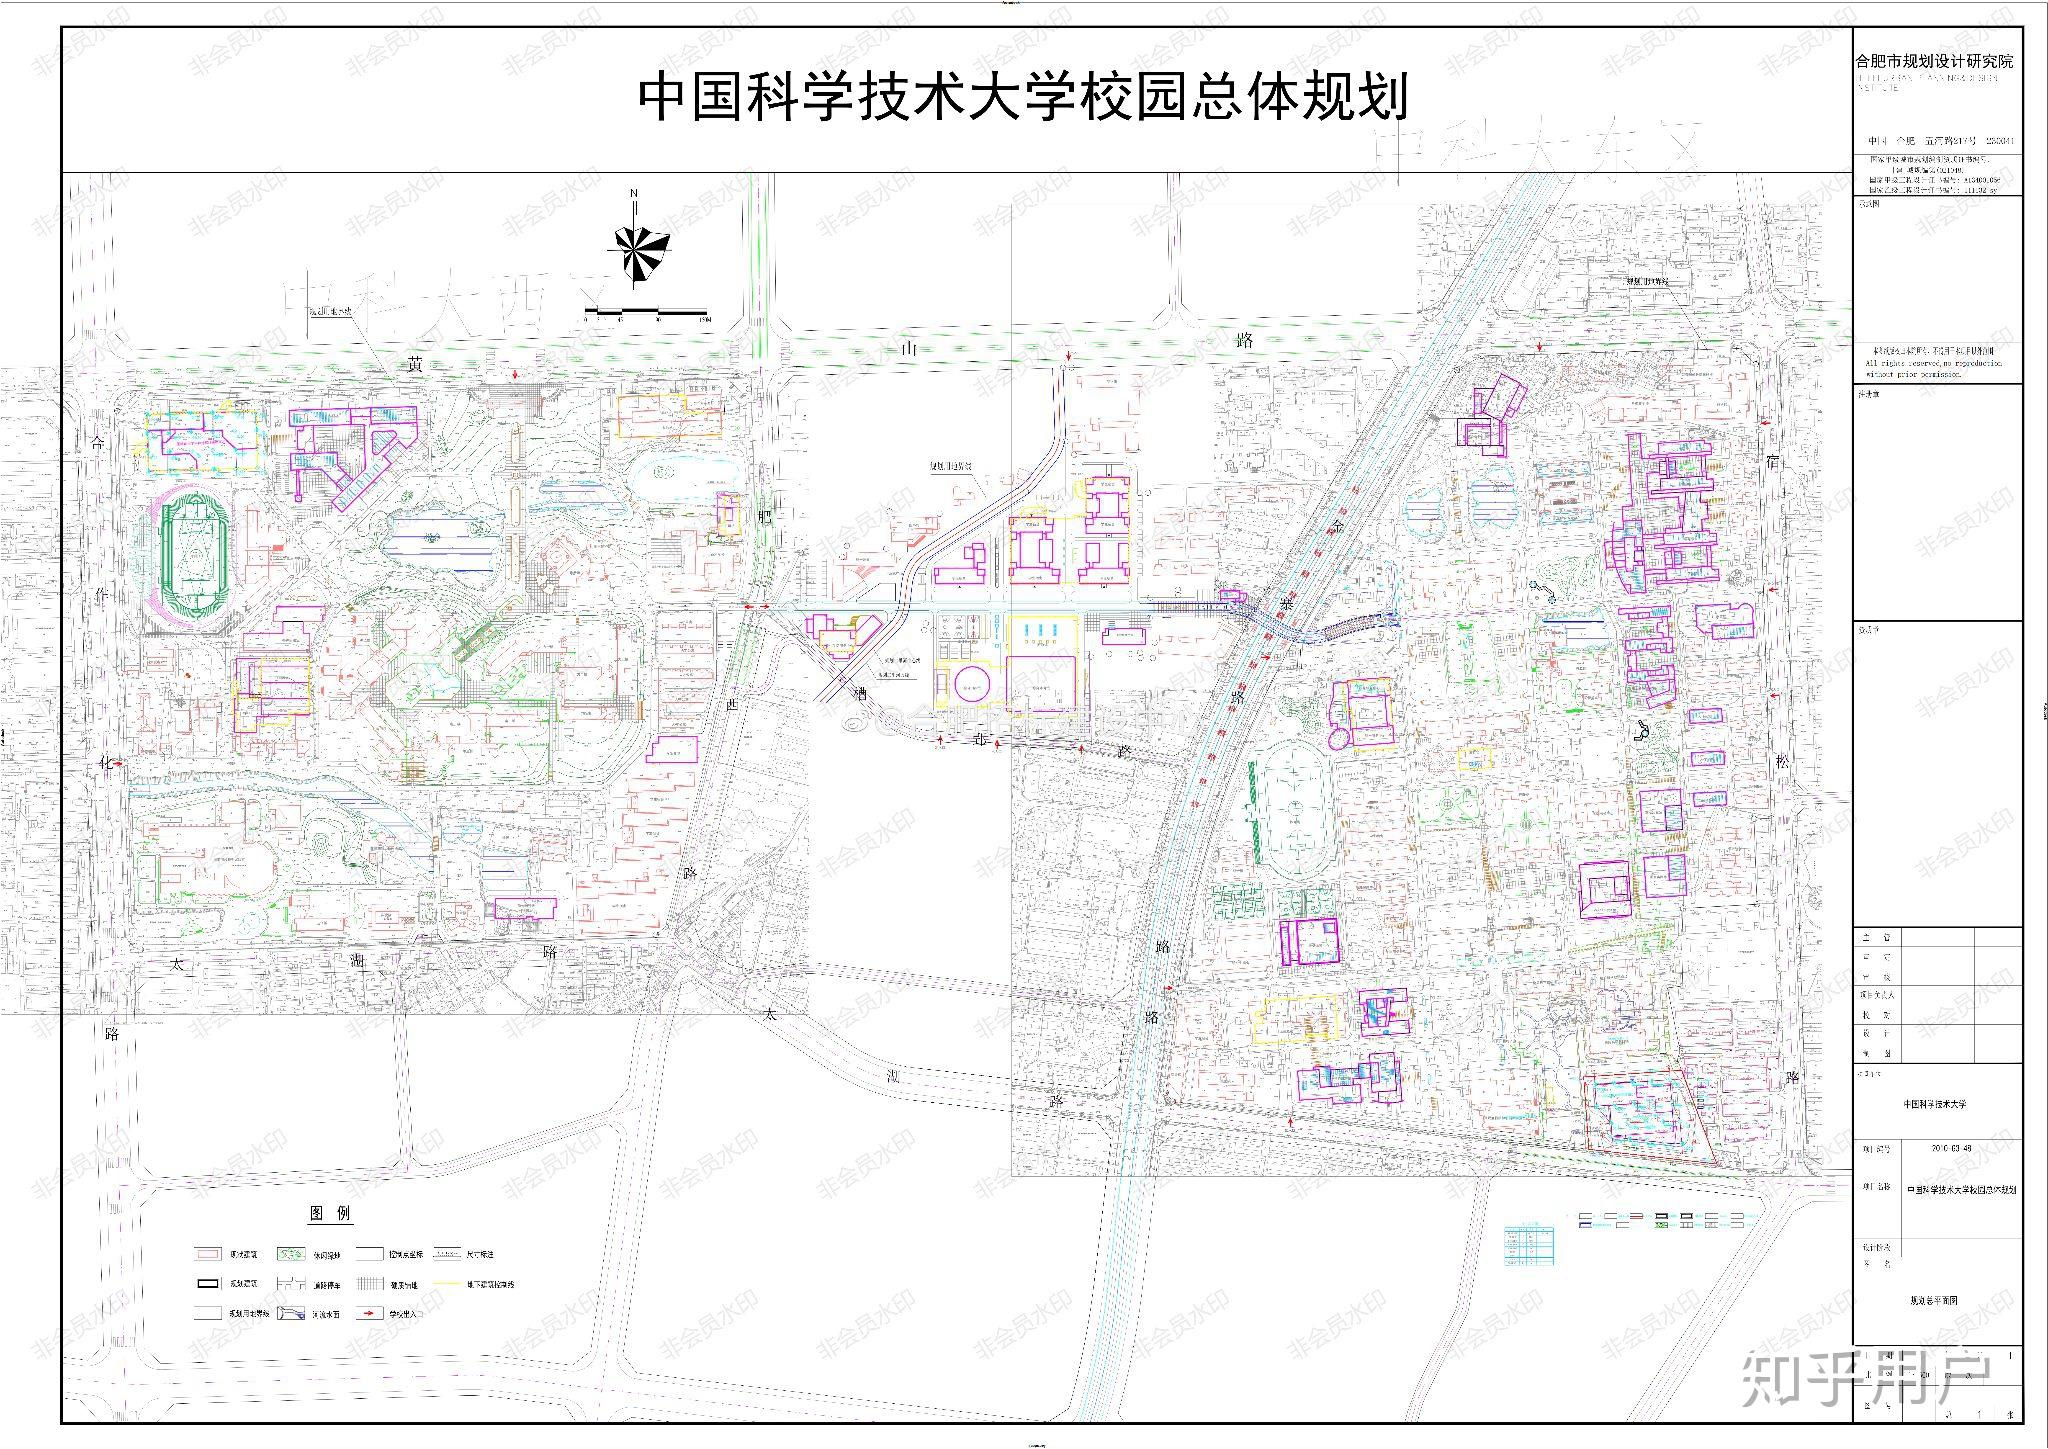 怎么看待中国科学技术大学高新校区校园用地只有一千亩而且还不是一体